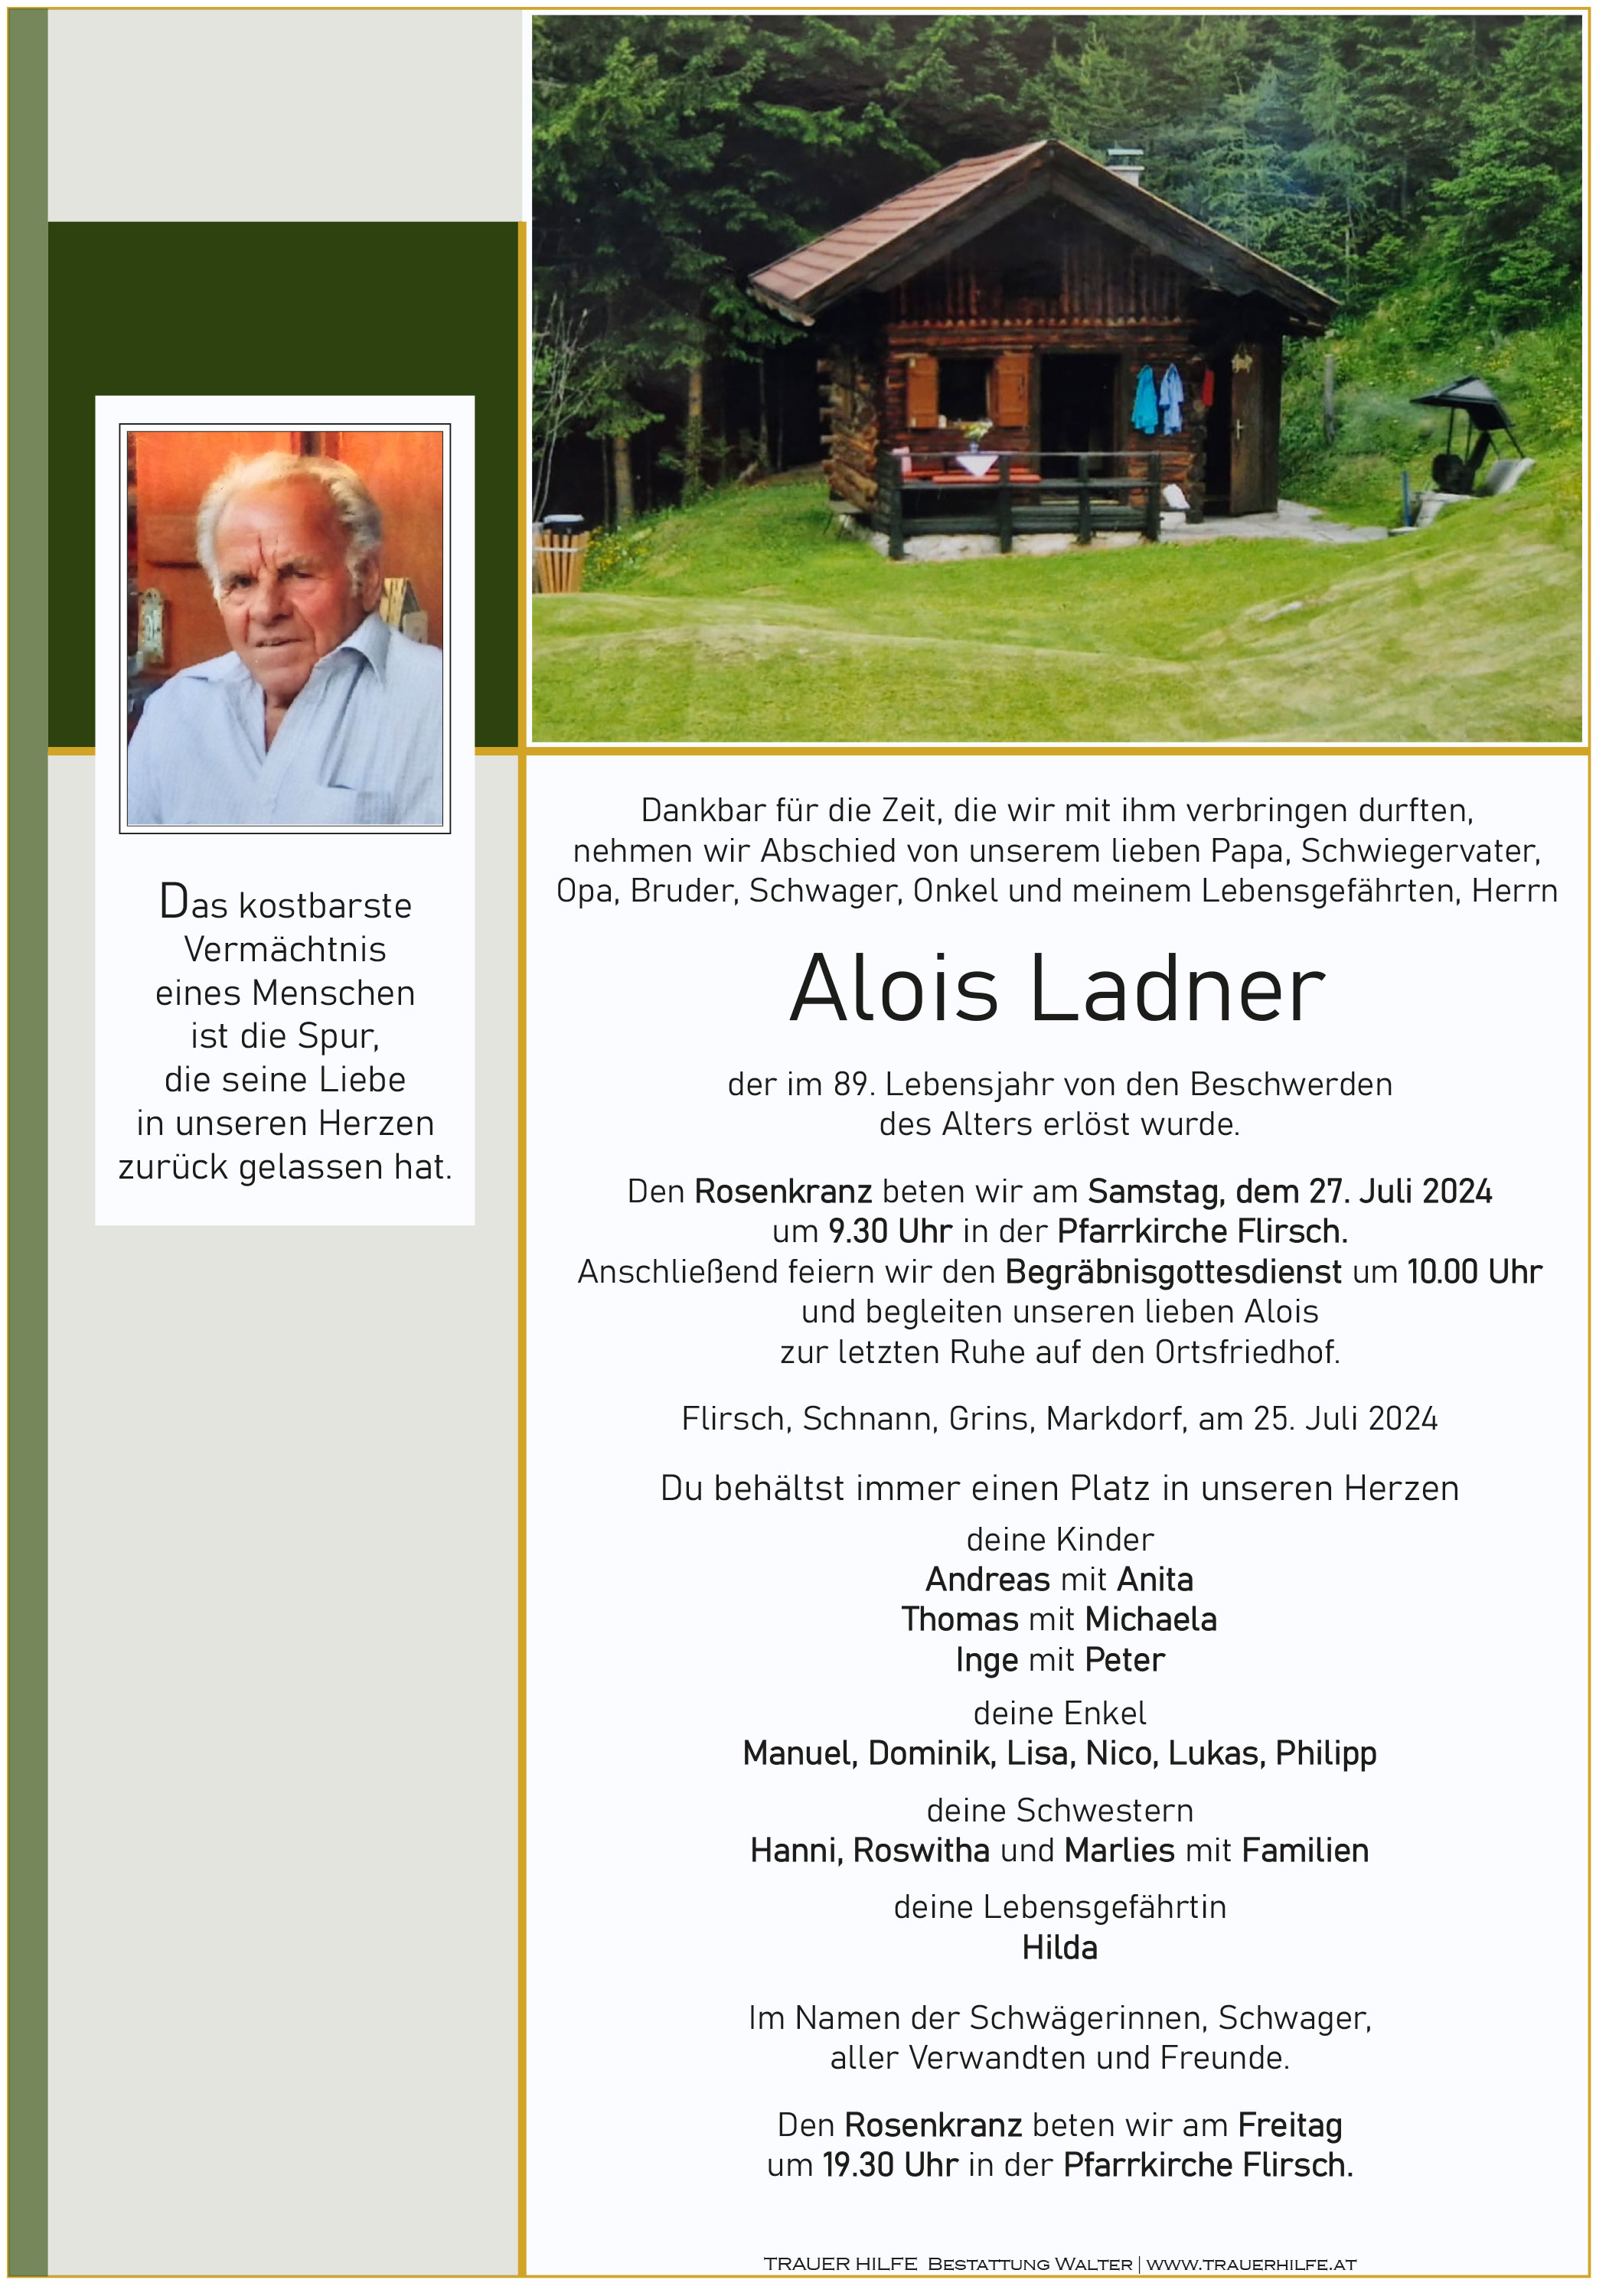 Alois Ladner